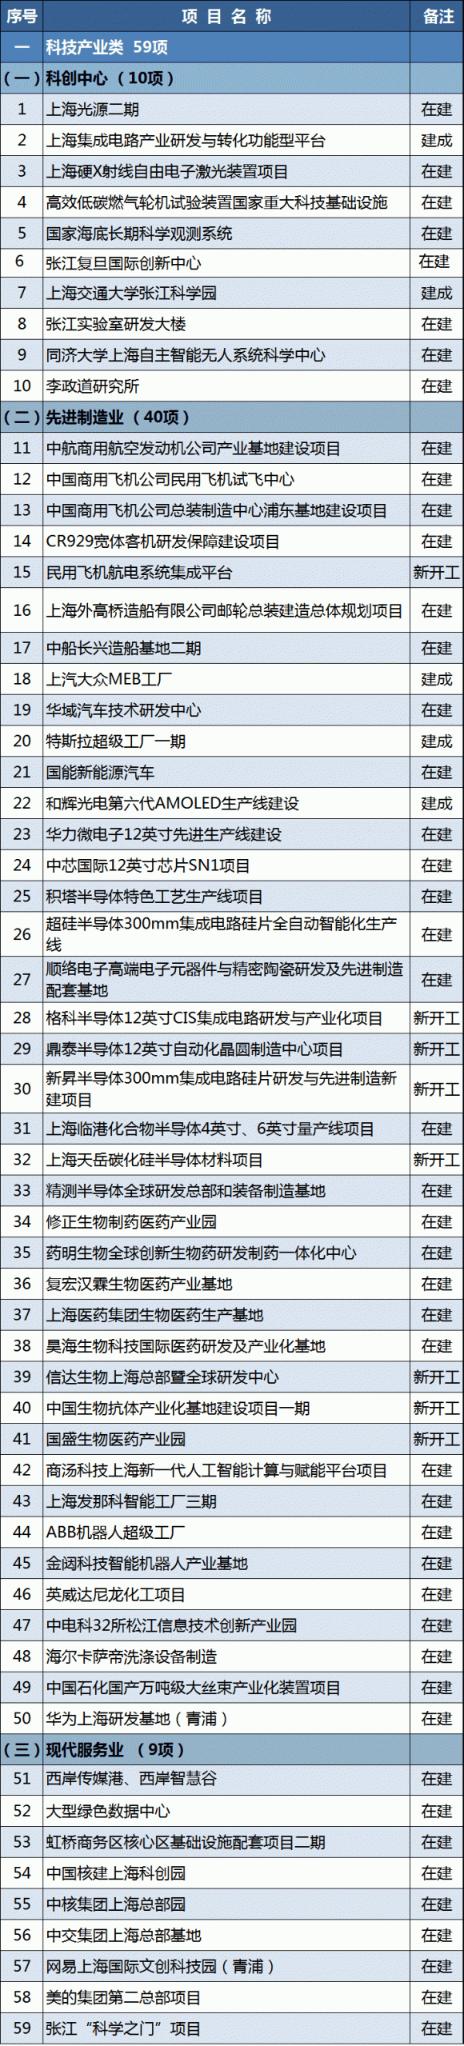 2021年上海市重大建设项目清单公布